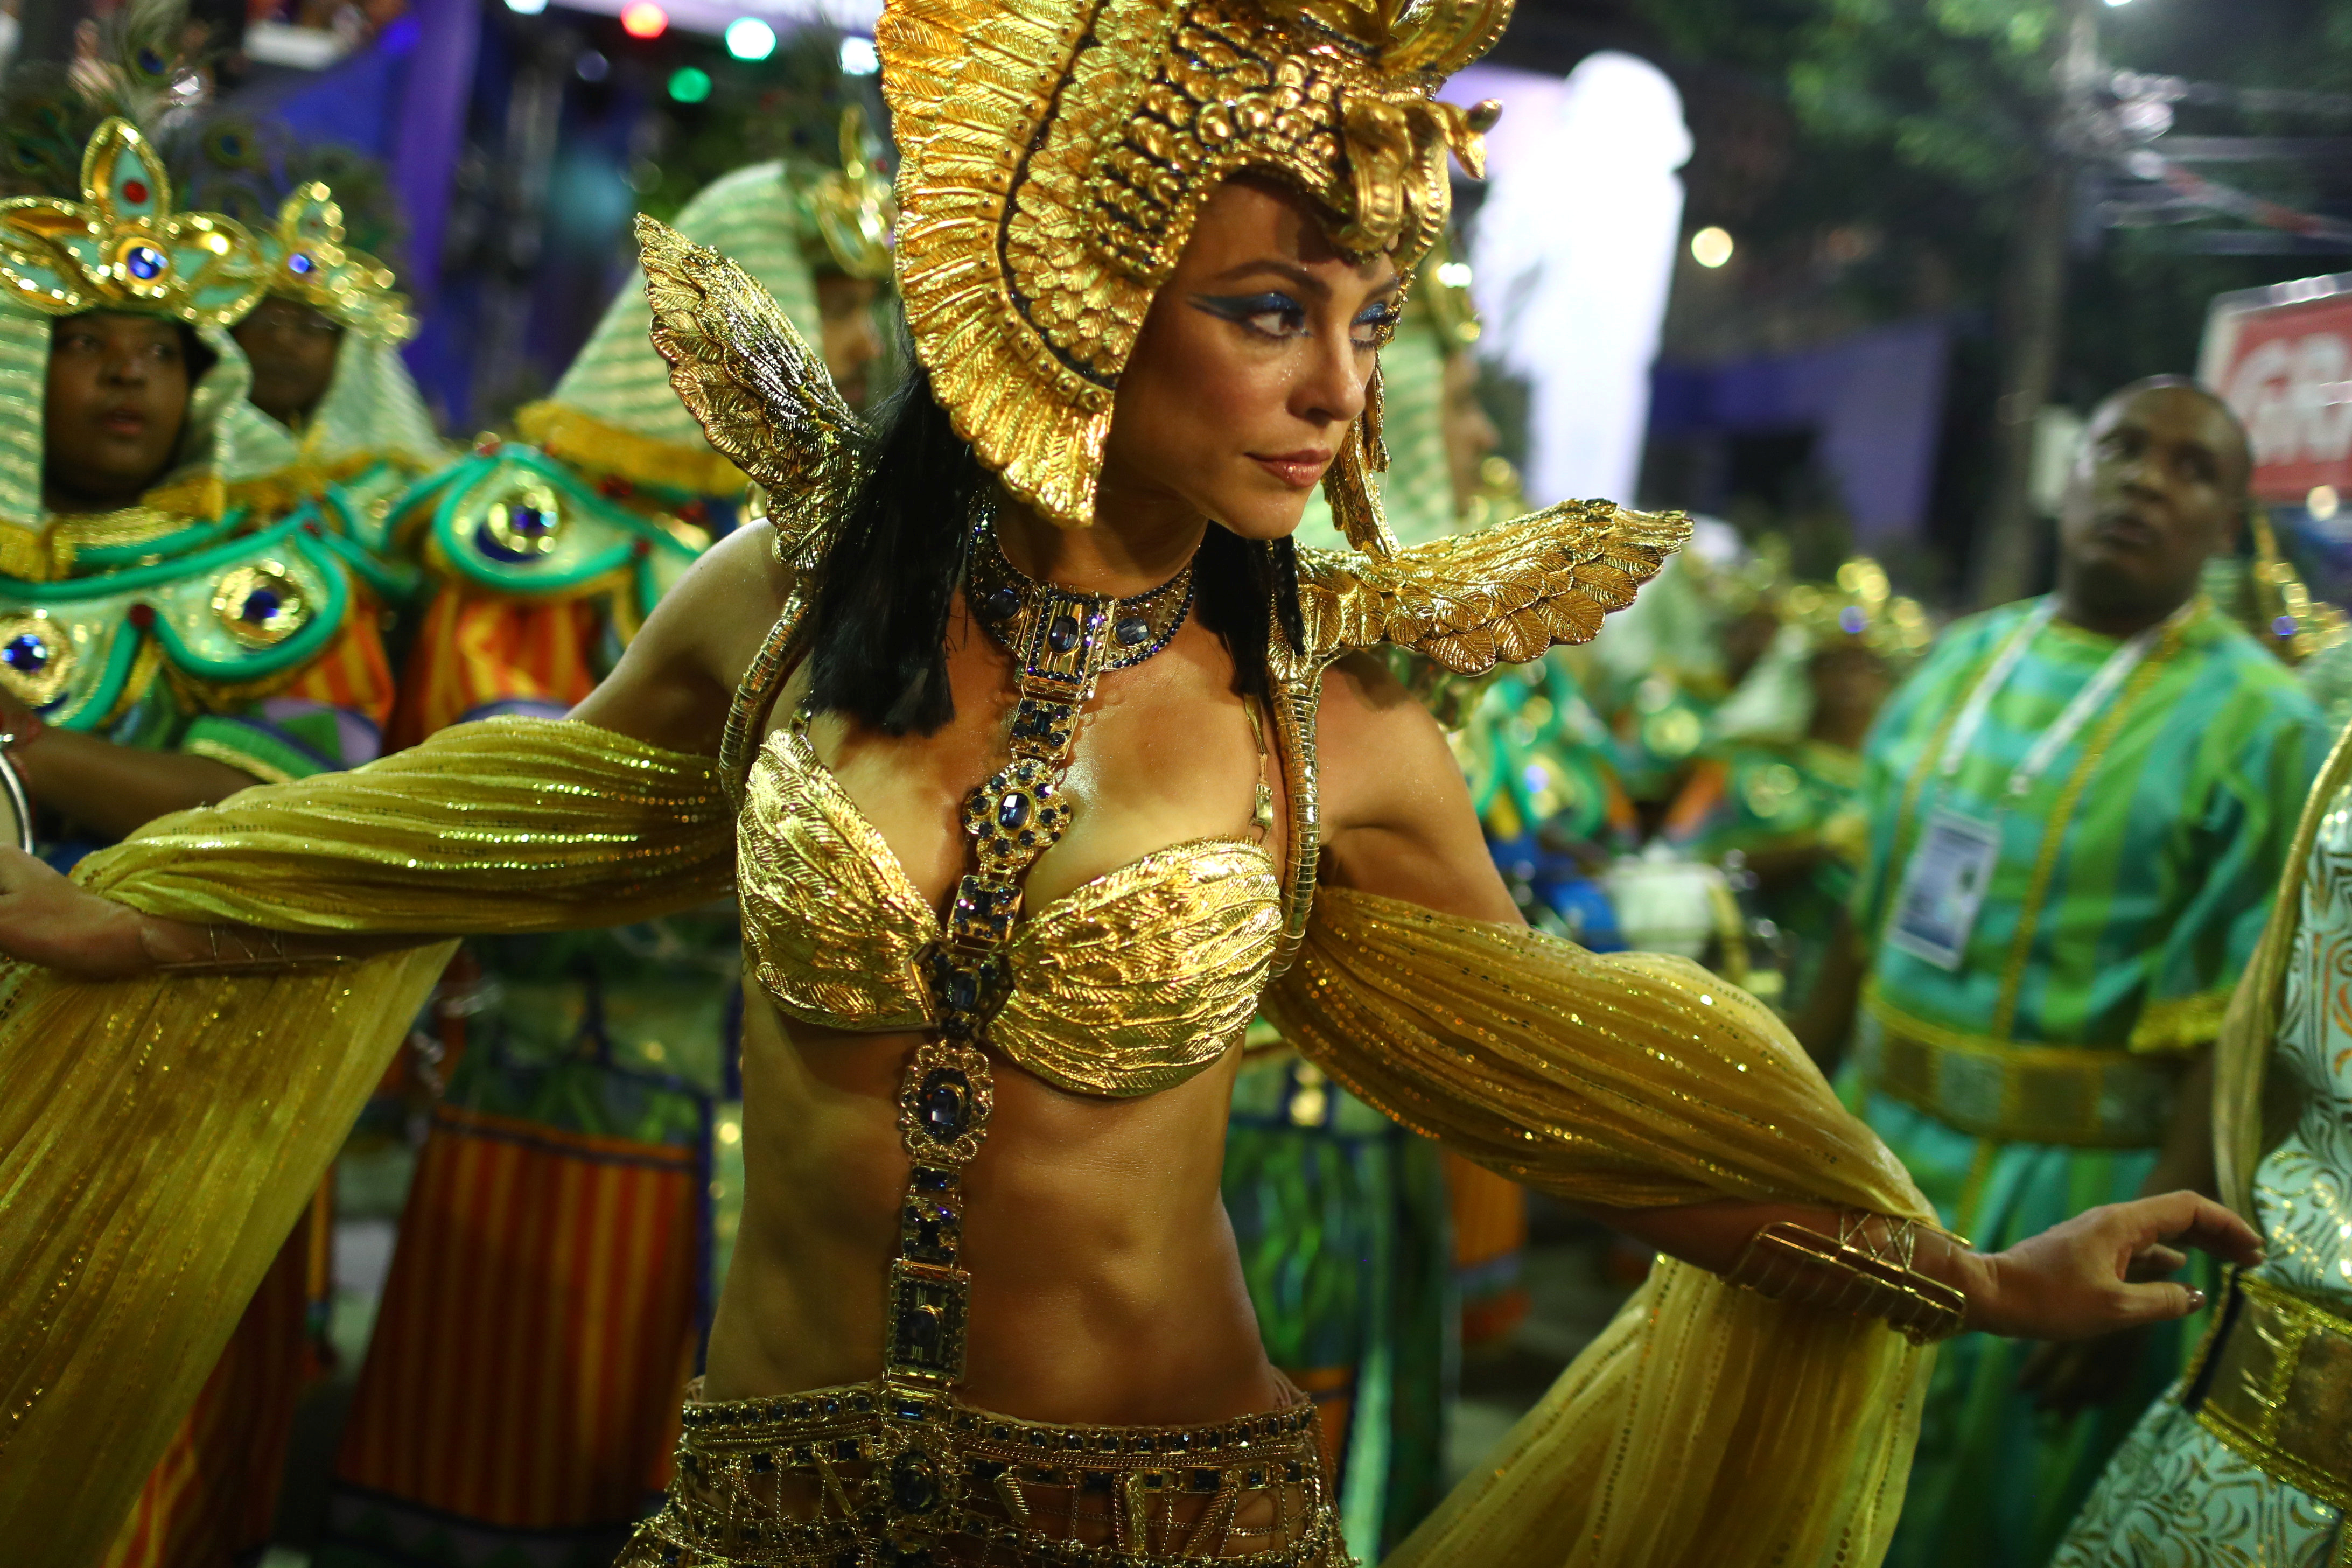 Karnaval. Бразильский фестиваль в Рио де Жанейро 2020. Бразилия Рио-де-Жанейро карнавал костюмы. Карнавал в Рио-де-Жанейро 2020 девушки. Карнавал Рио в Бразилии 2020.